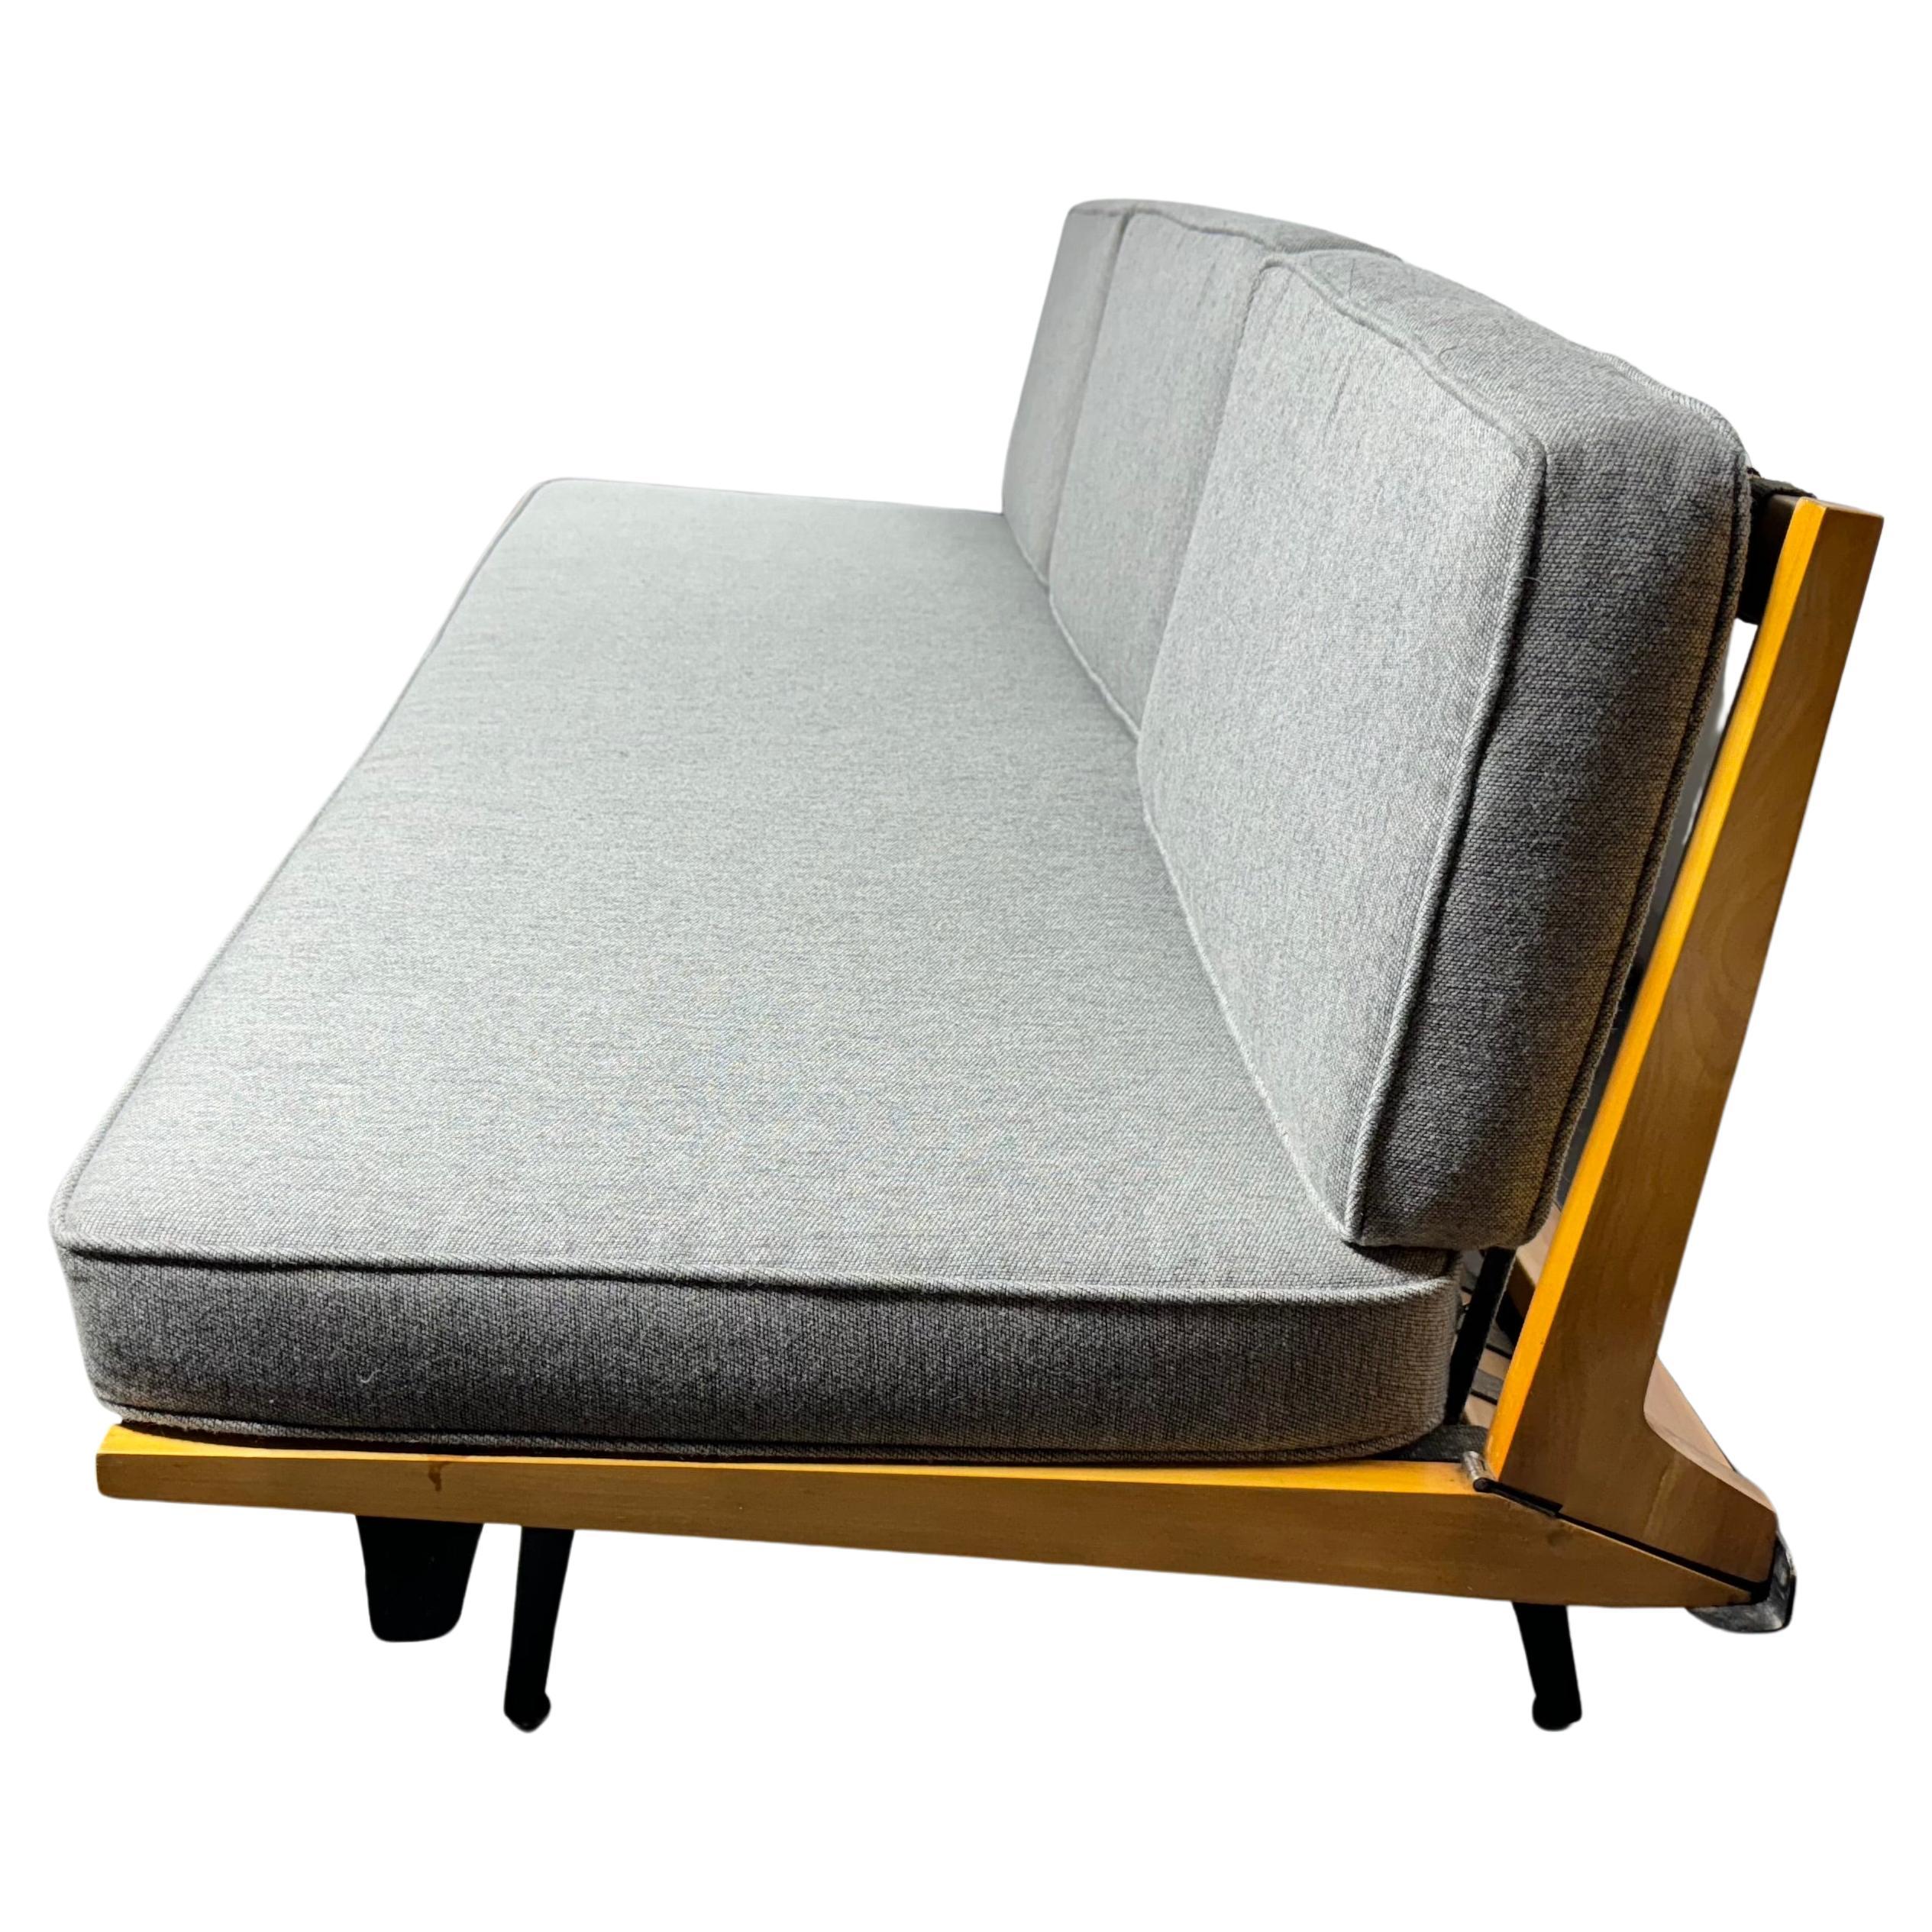 Sofa modulaire à cadre en acier George Nelson/Herman Miller, première production